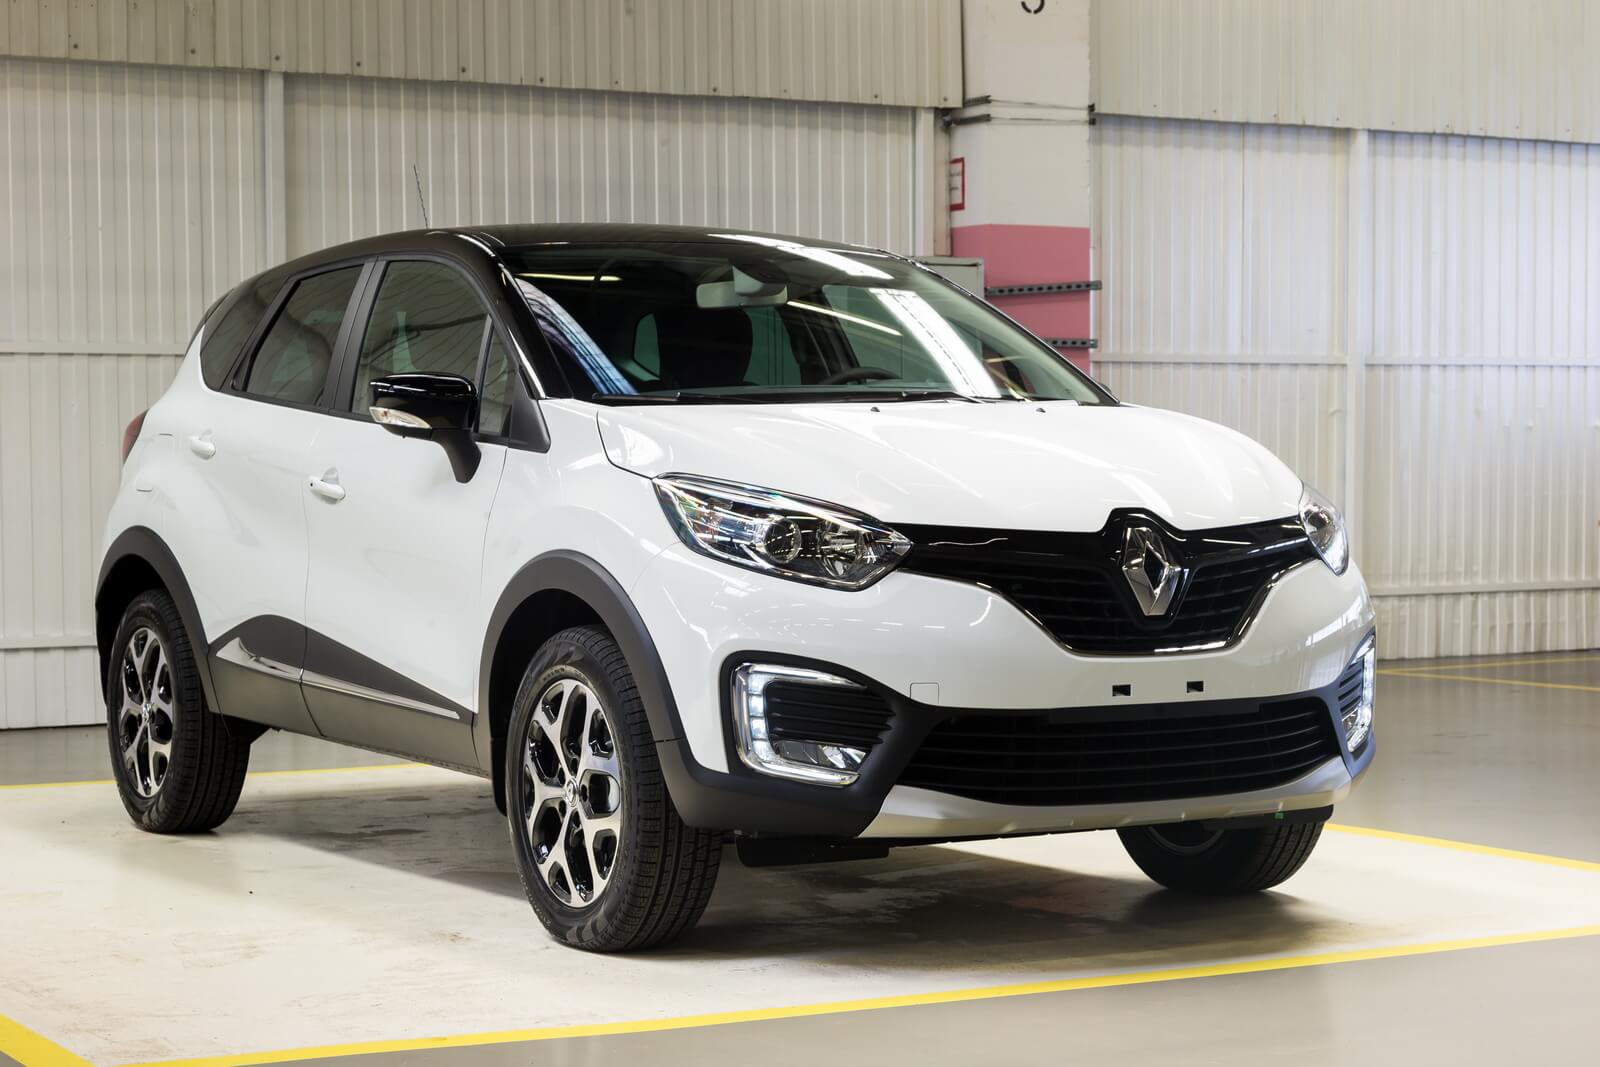 Рено Каптур (Renault Kaptur) 2019 - цена, отзывы, комплектации, технические характеристики, тест-драйв. Фото салона и экстерьера авто. Двигатель и расход топлива